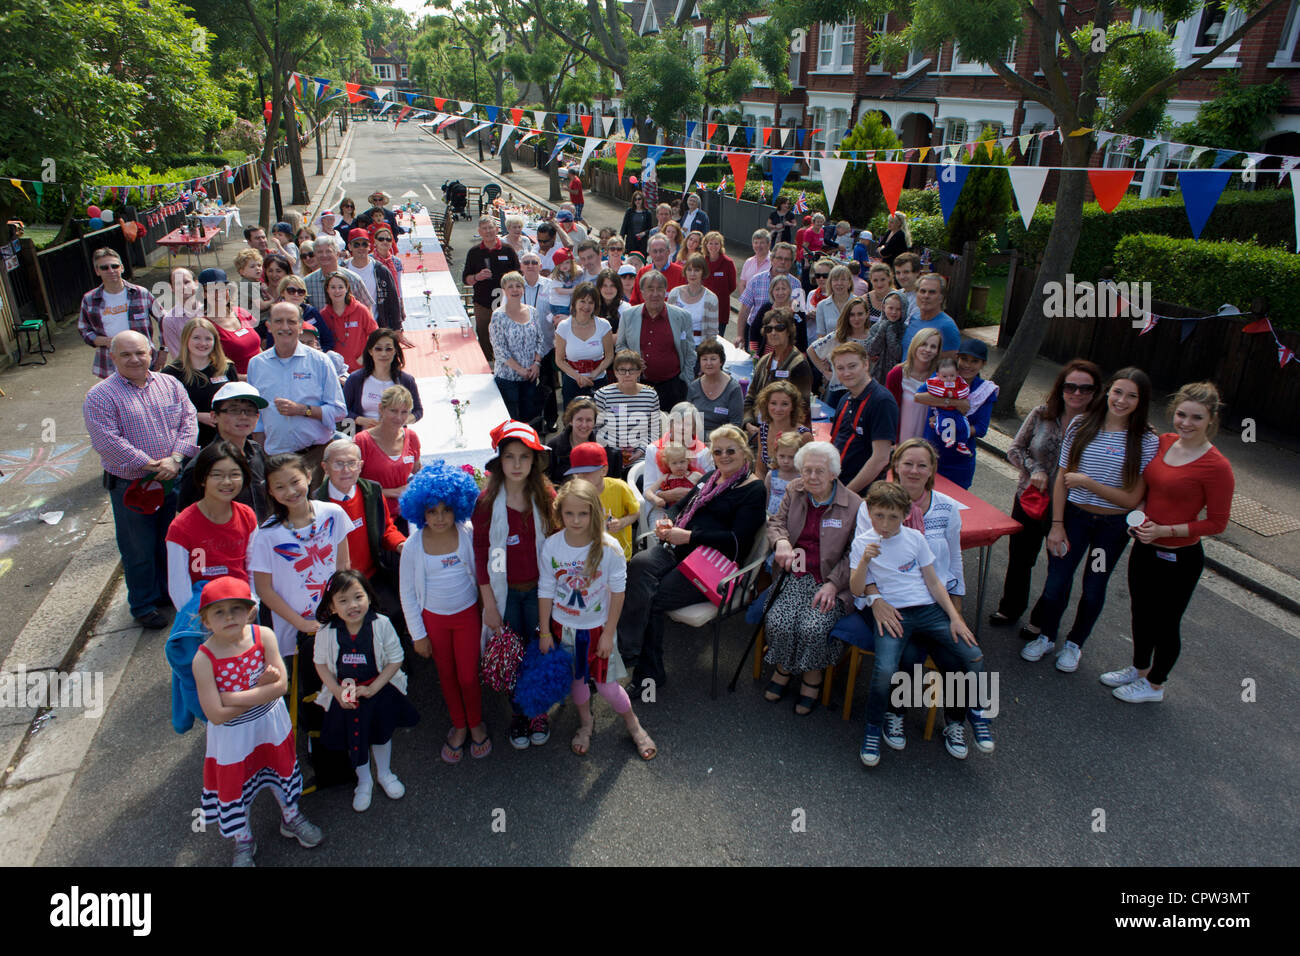 Ritratto di gruppo di un quartiere street party in Dulwich, Londra del sud per celebrare il Giubileo di diamante della regina Elisabetta. Foto Stock